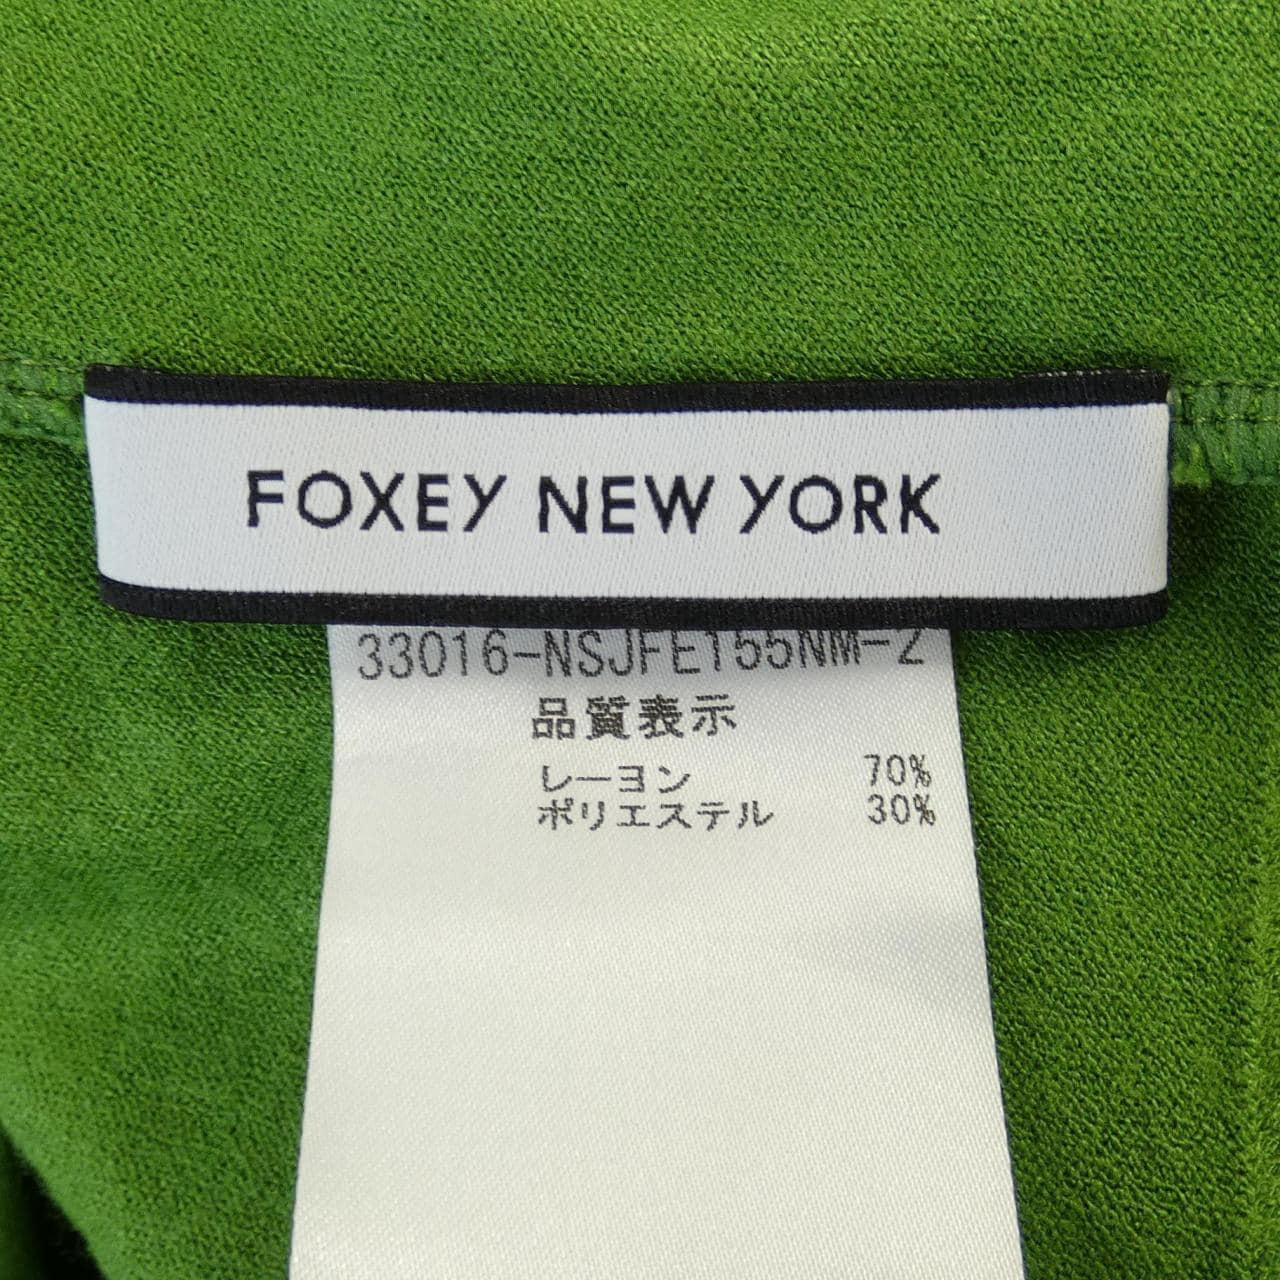 Foxy New York FOXEY NEW YORK cardigan